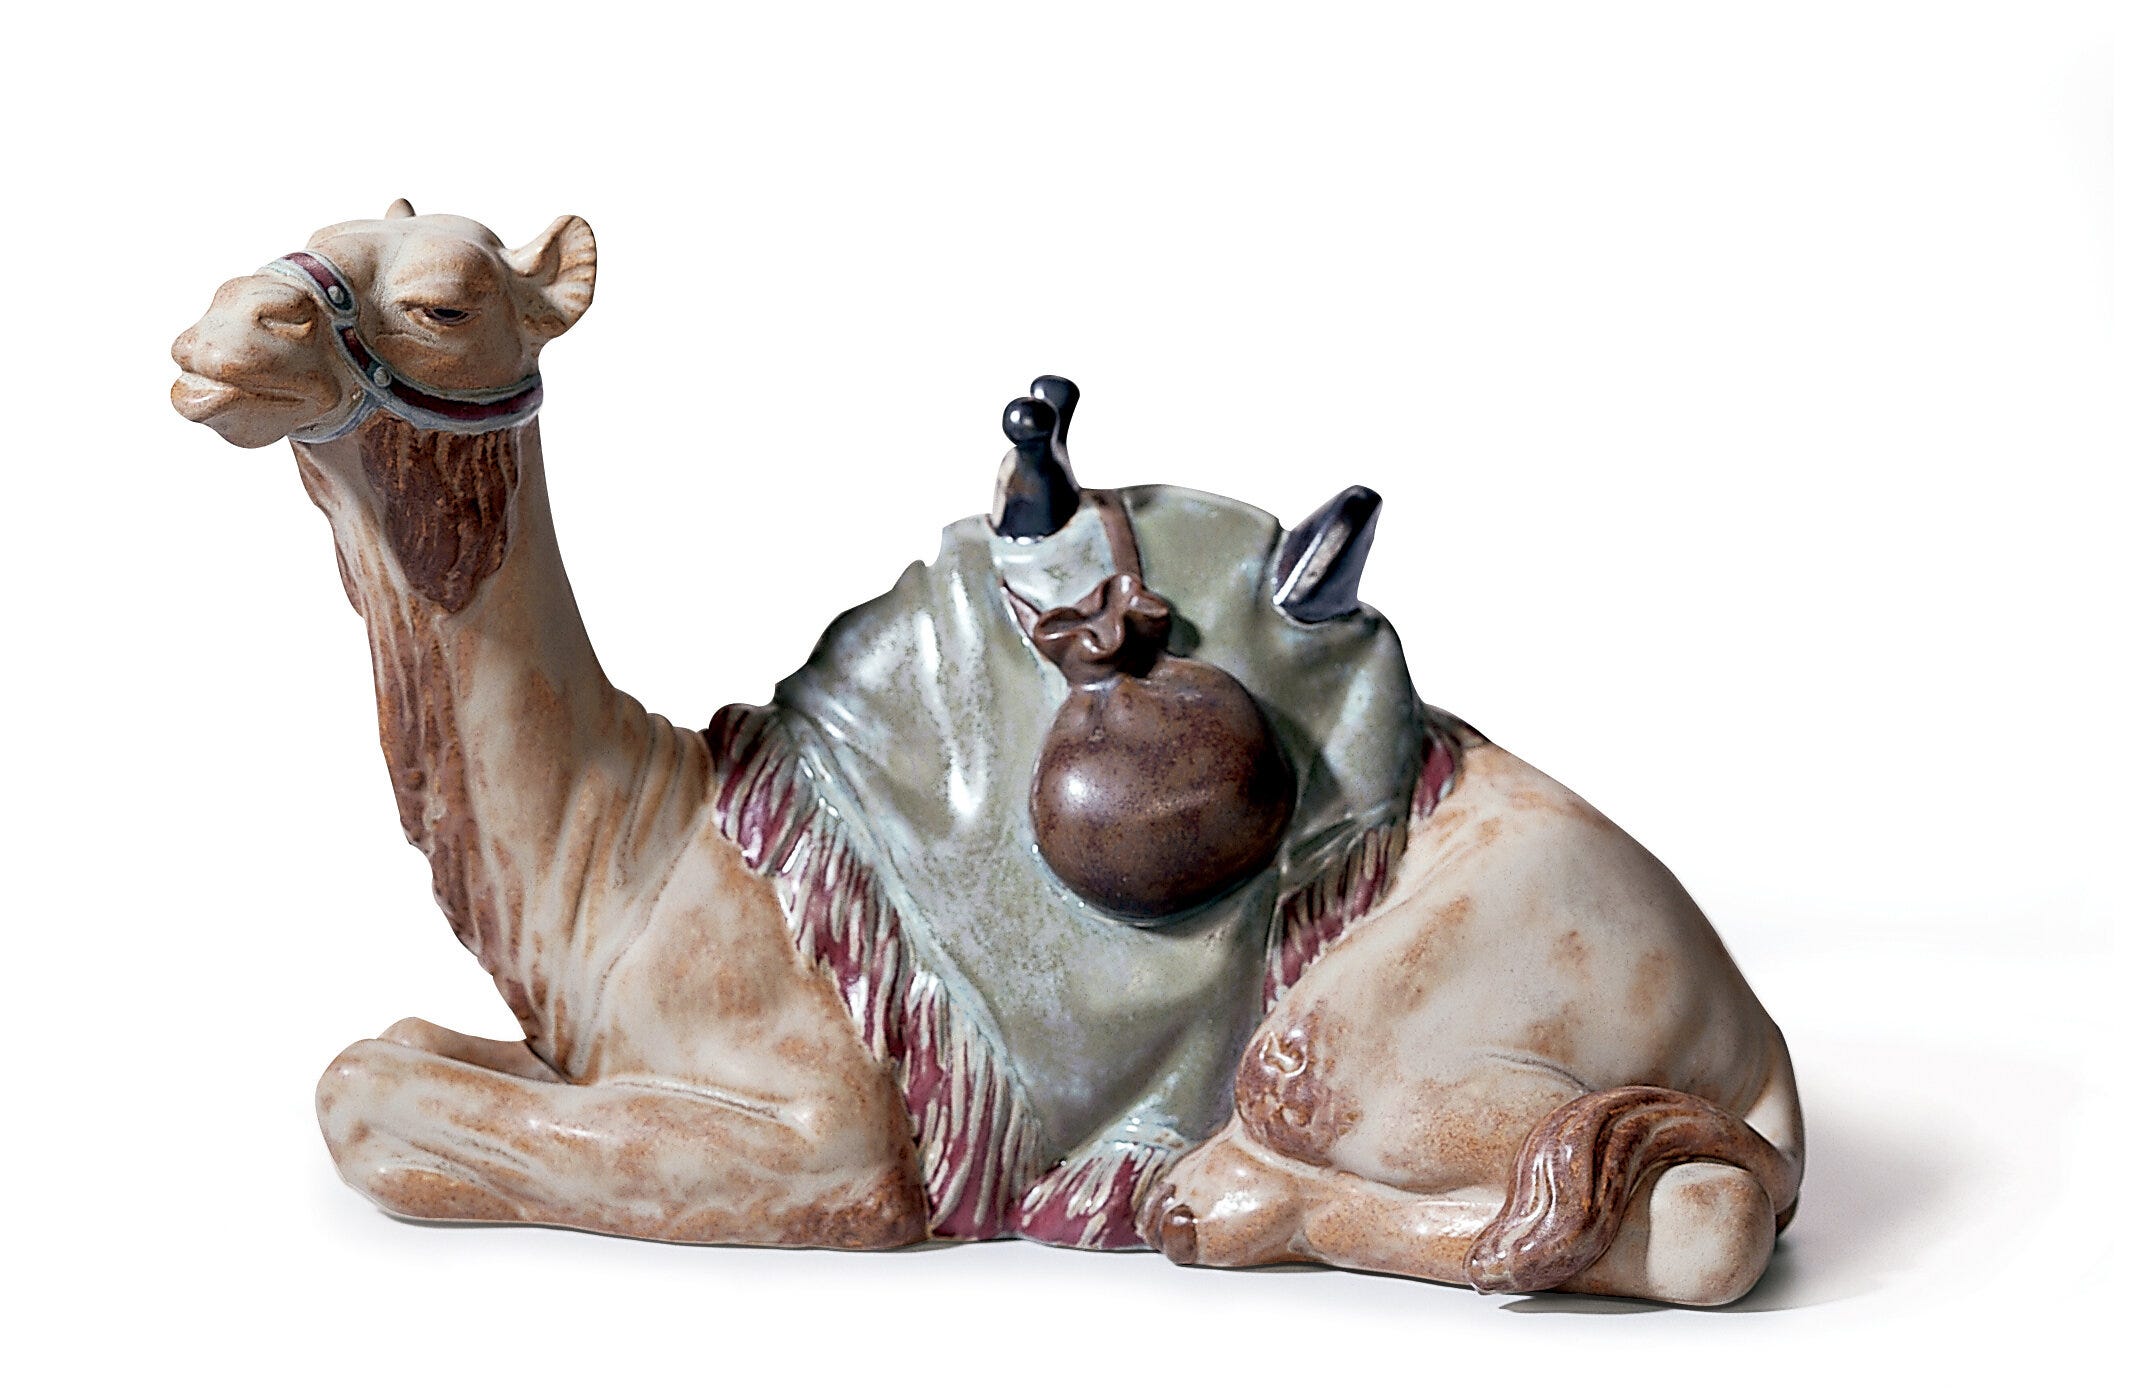 Camel Figurine Matte